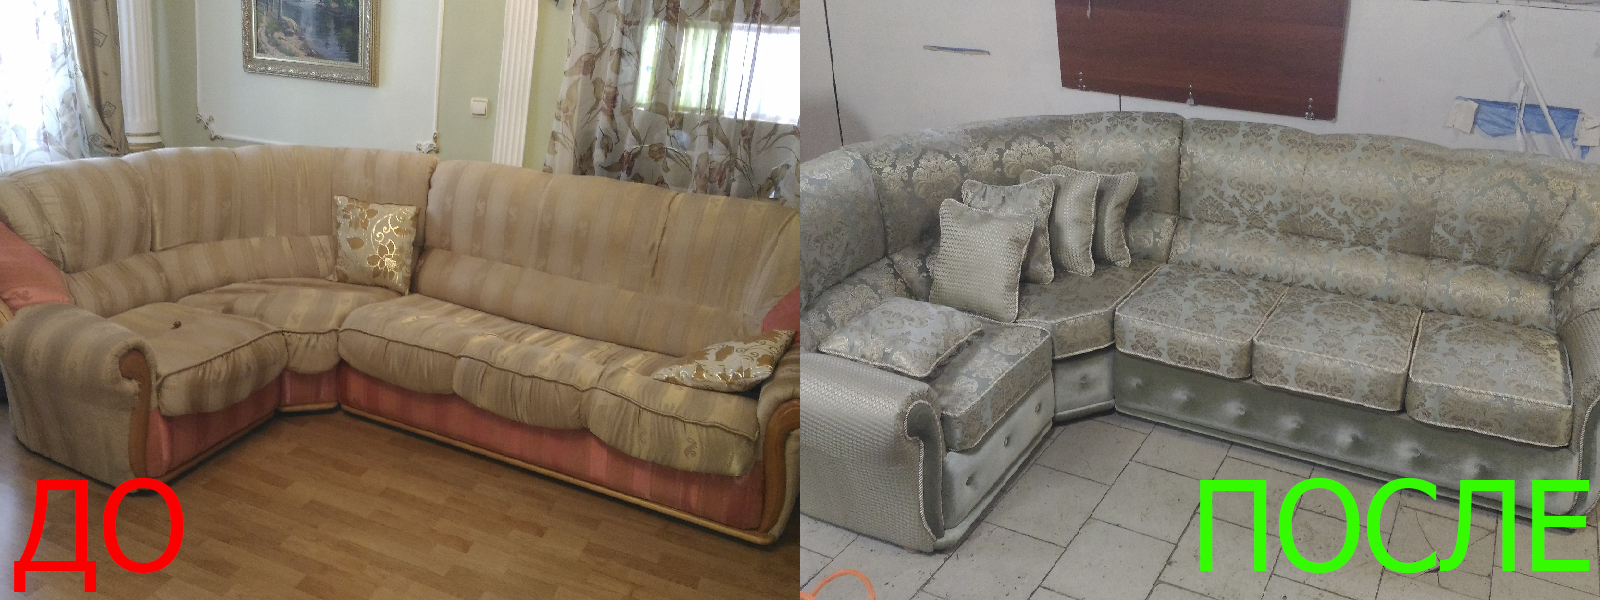 Обшивка мебели на дому в Казани по адекватной цене, качественно, с гарантией 100%